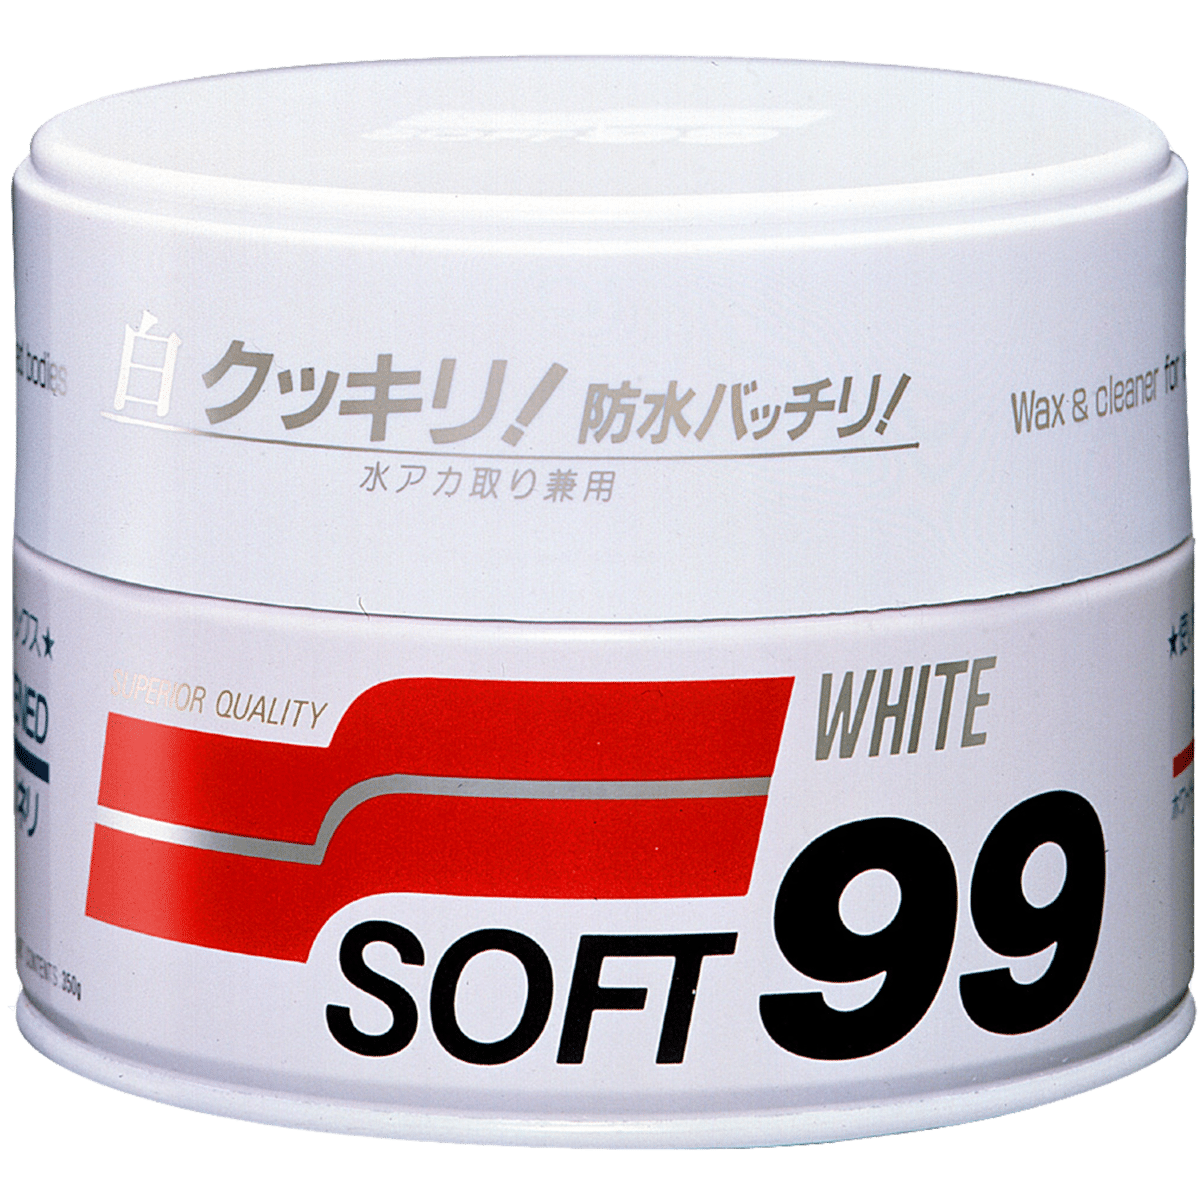 SOFT99 White Soft Wax 350g Wosk do Białych i Jasnych Lakierów Niemetalicznych